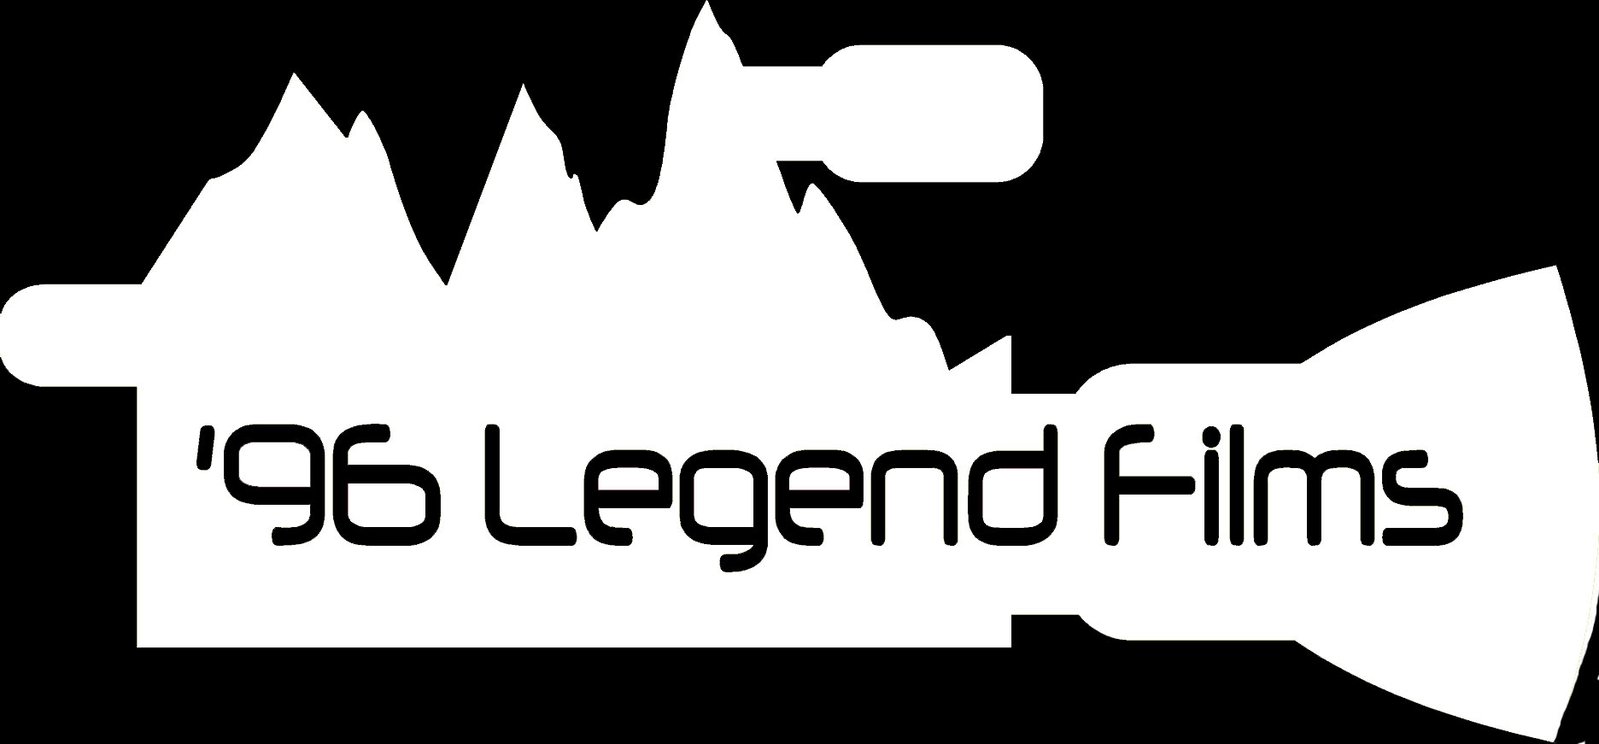 96 Legend Films Logo